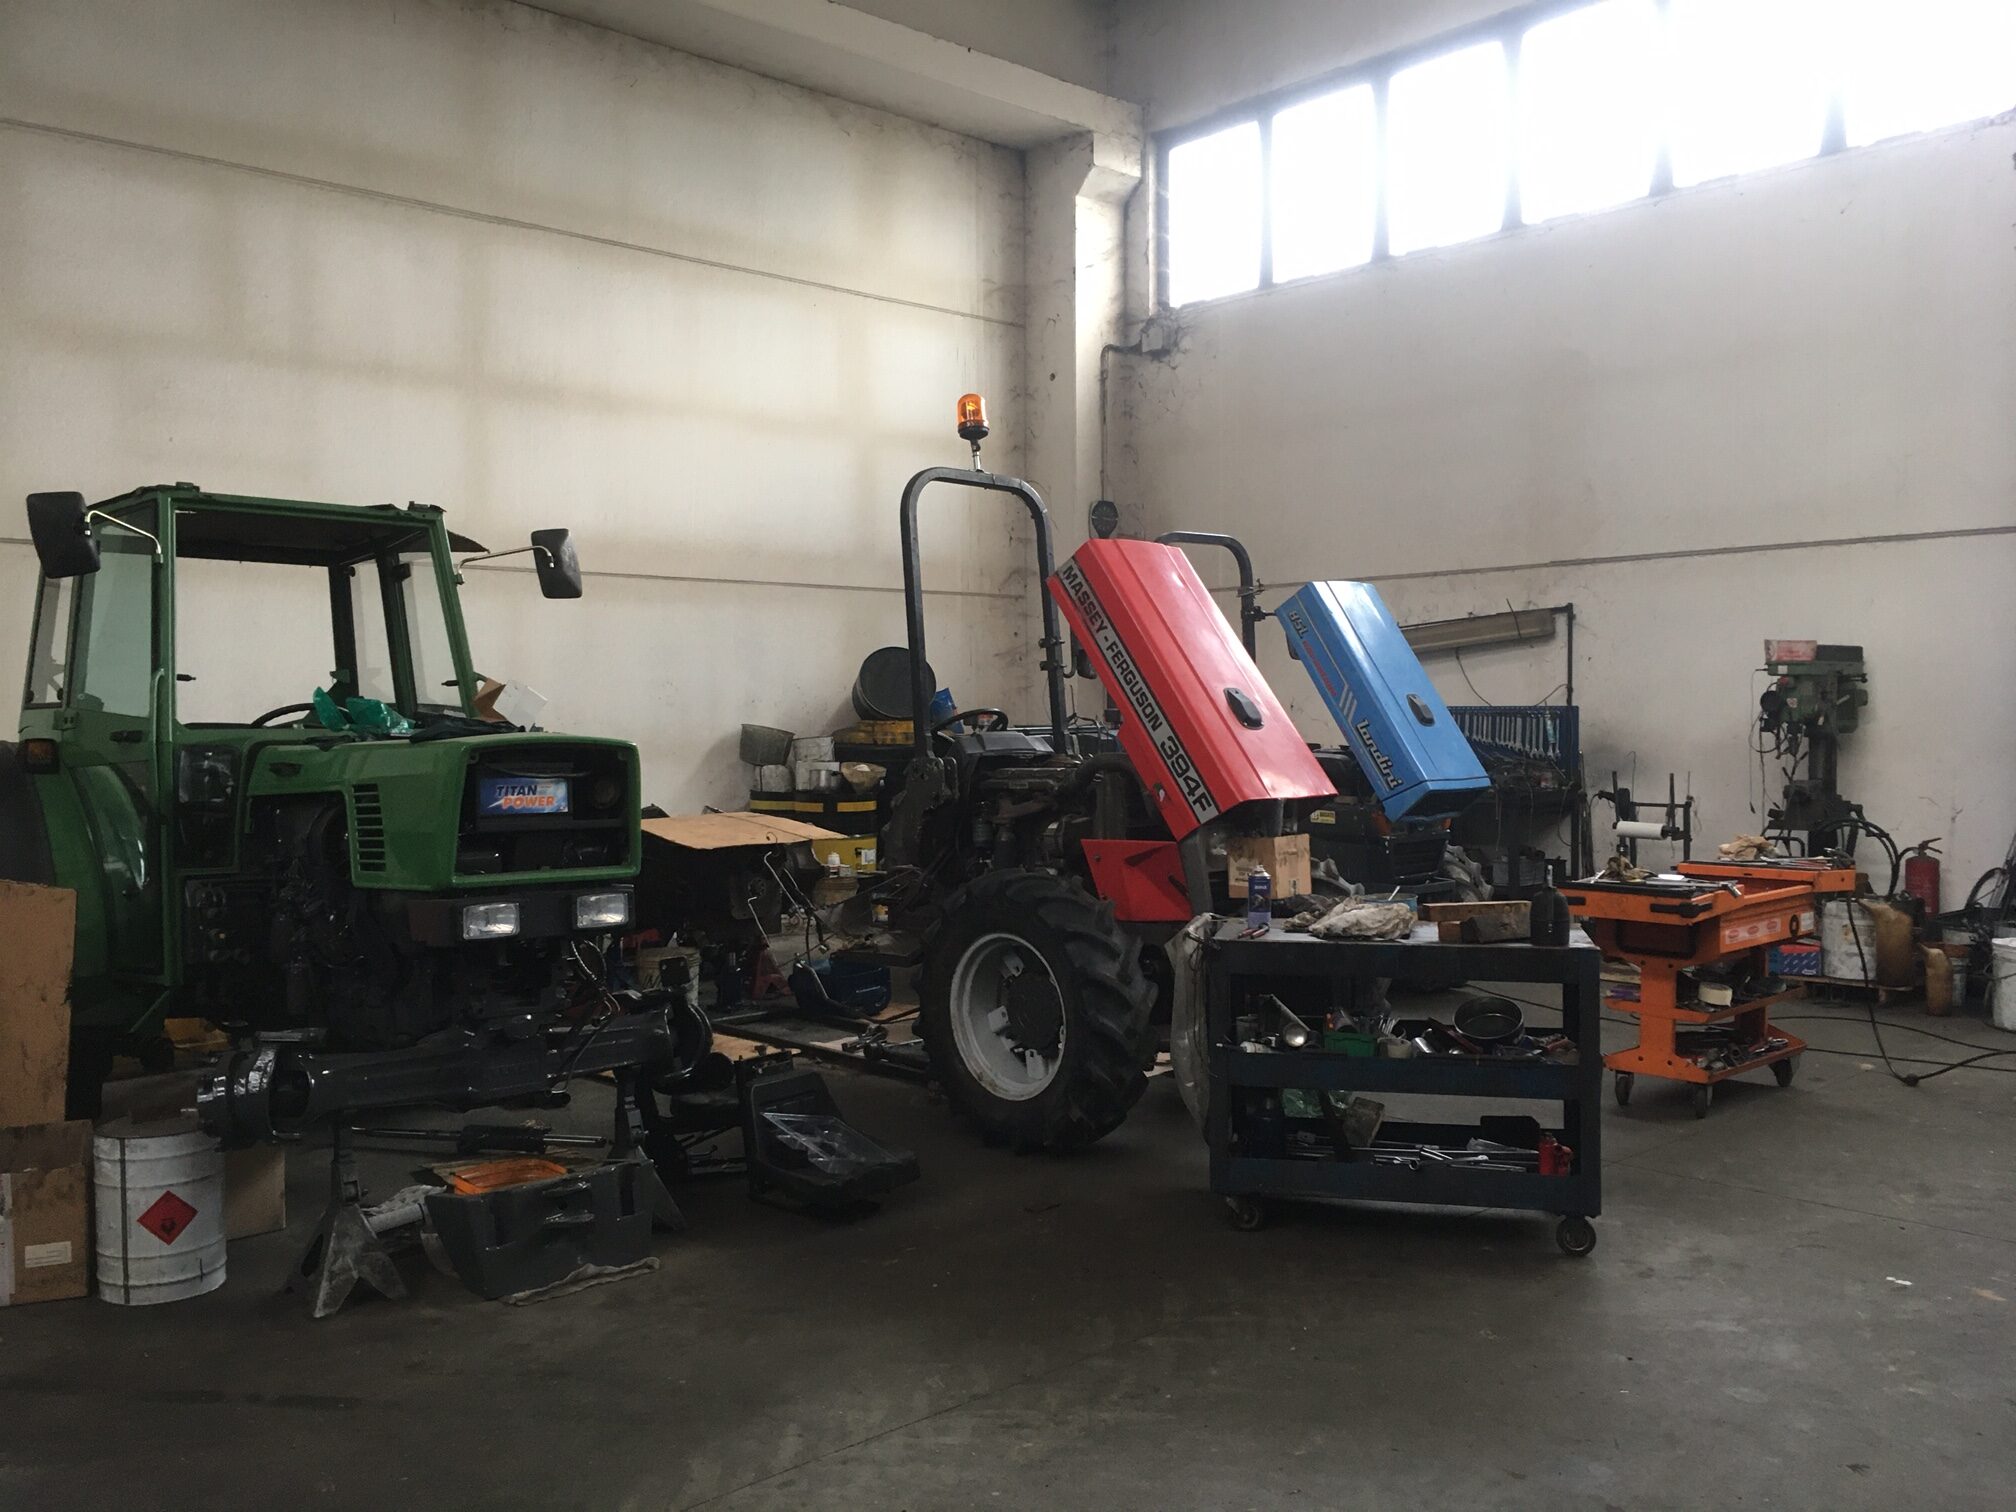 officina riparazione macchine agricole - Possamai Vidor (TV)